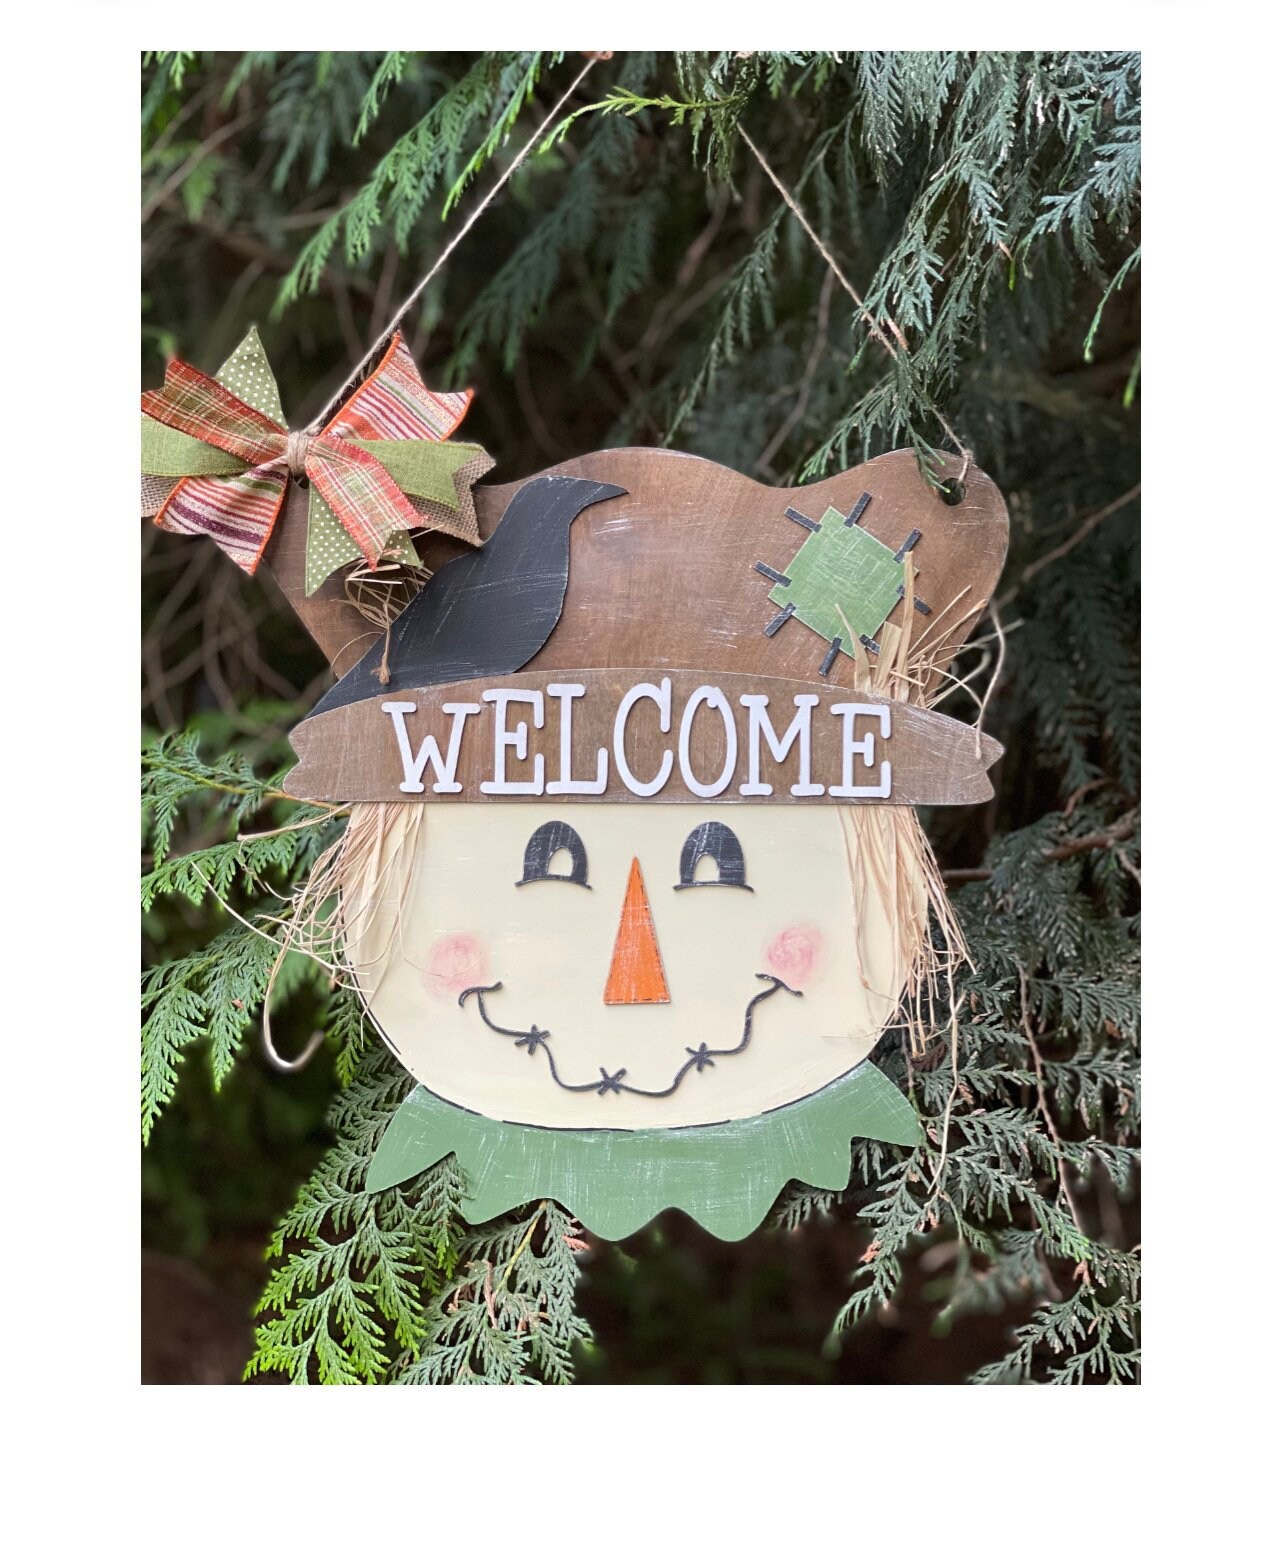 Scarecrow Door Hanger - Fall Porch Decor - Fall Scarecrow Decor - Happy Fall Ya'll